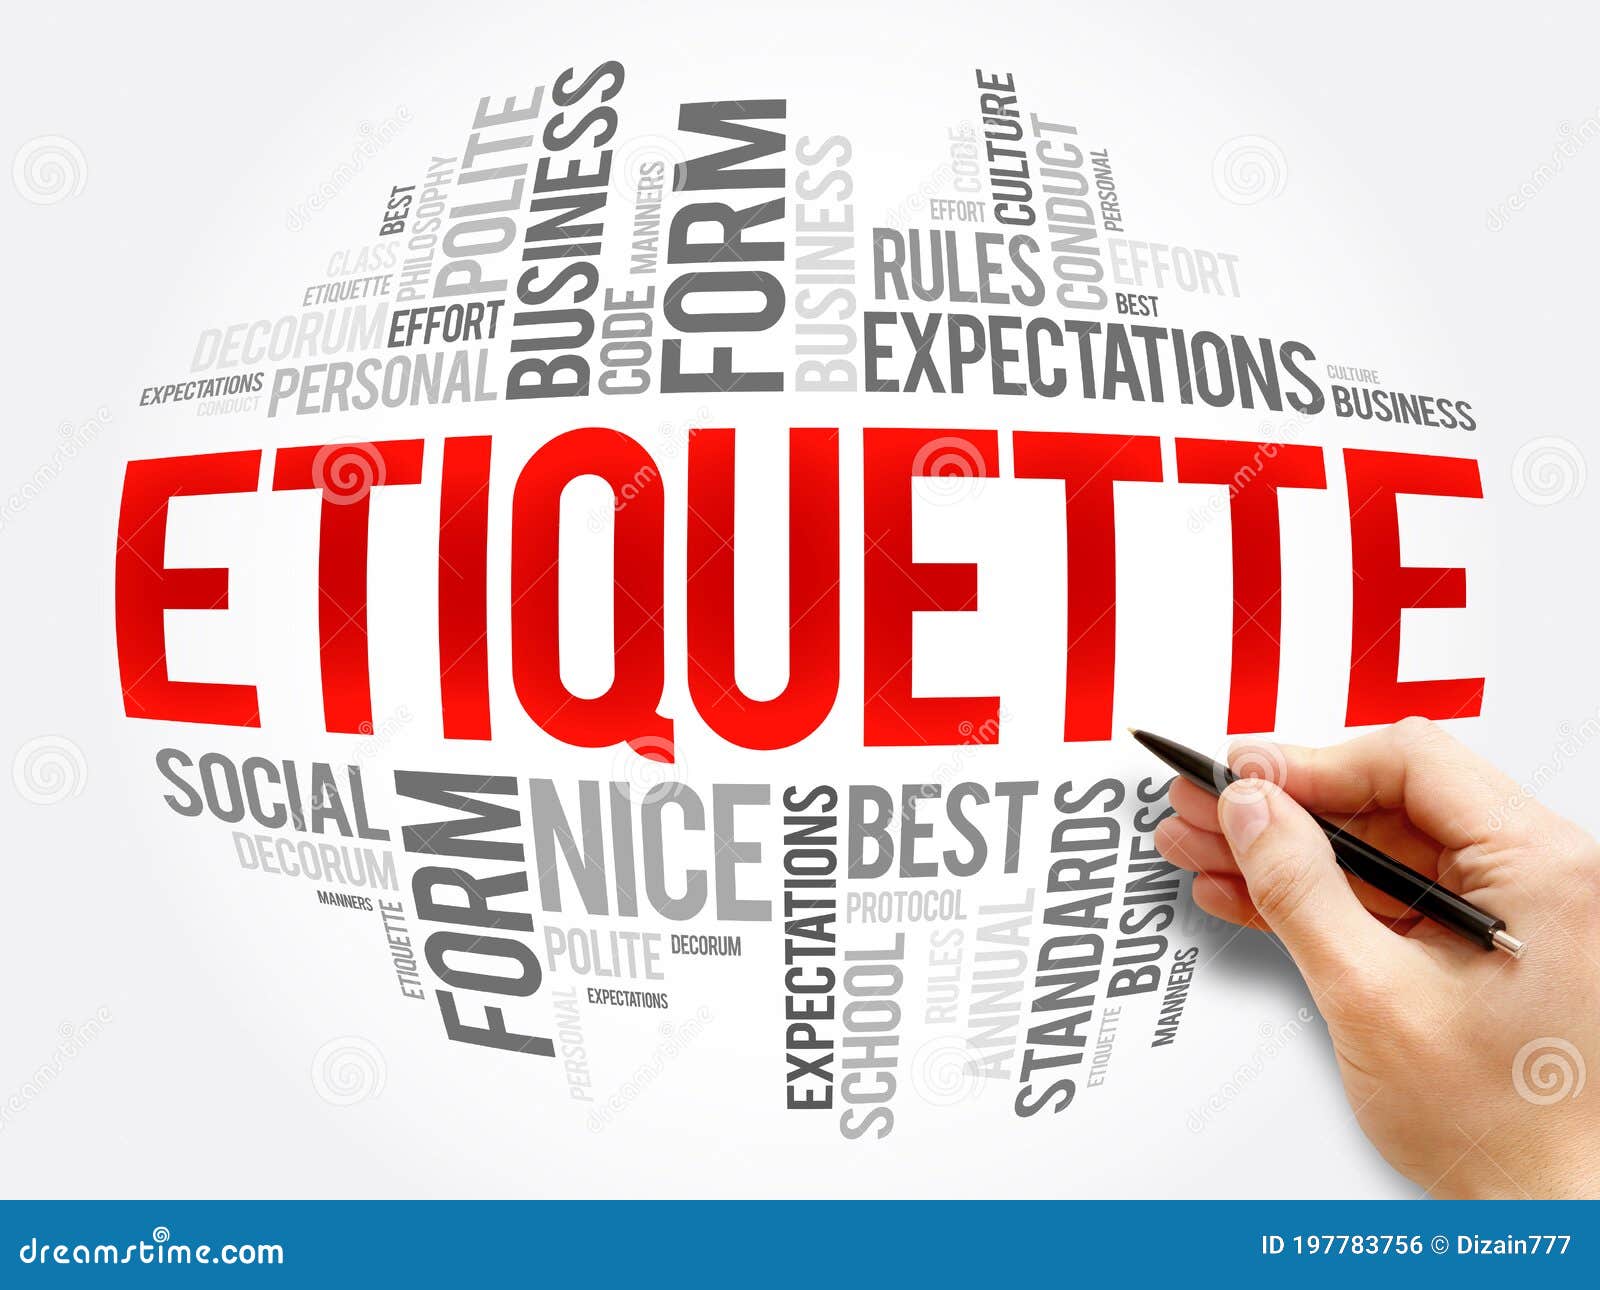 etiquette word cloud collage